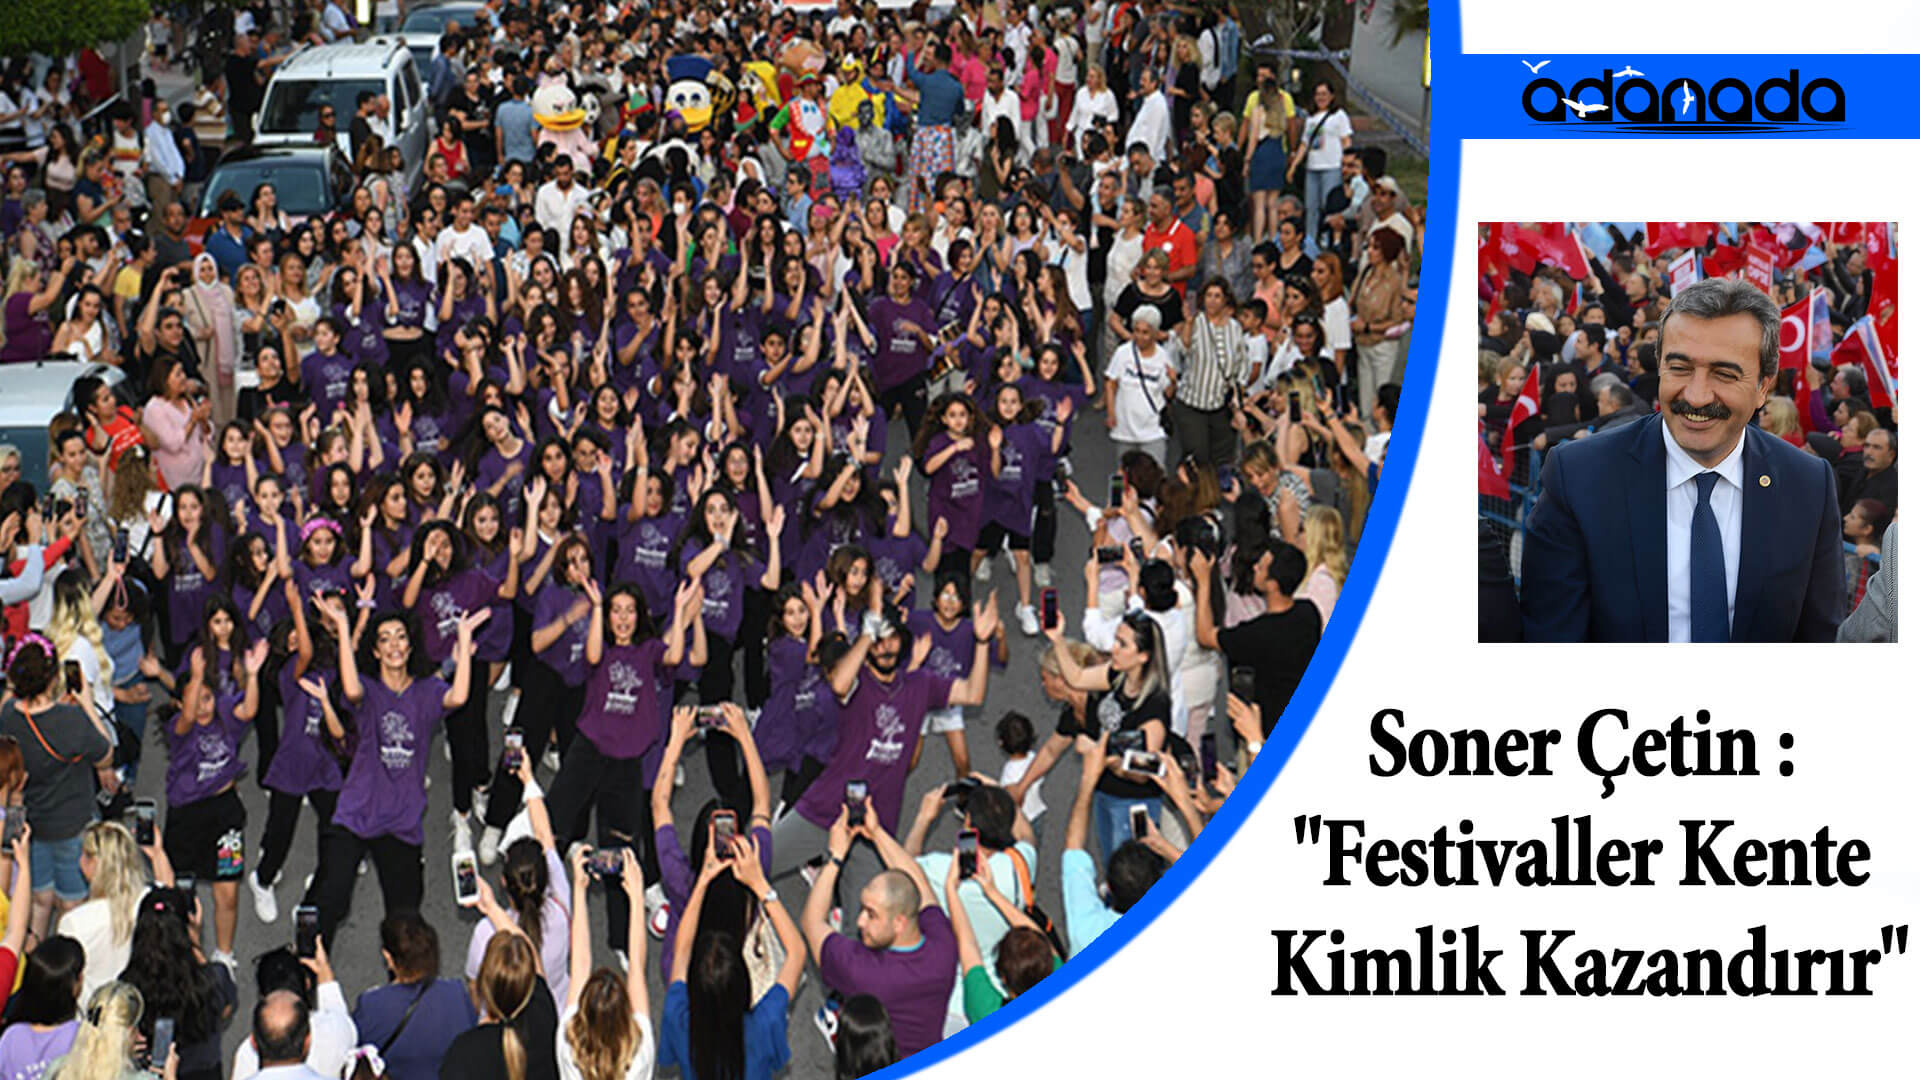 Soner Çetin : “Festivaller Kente Kimlik Kazandırır”